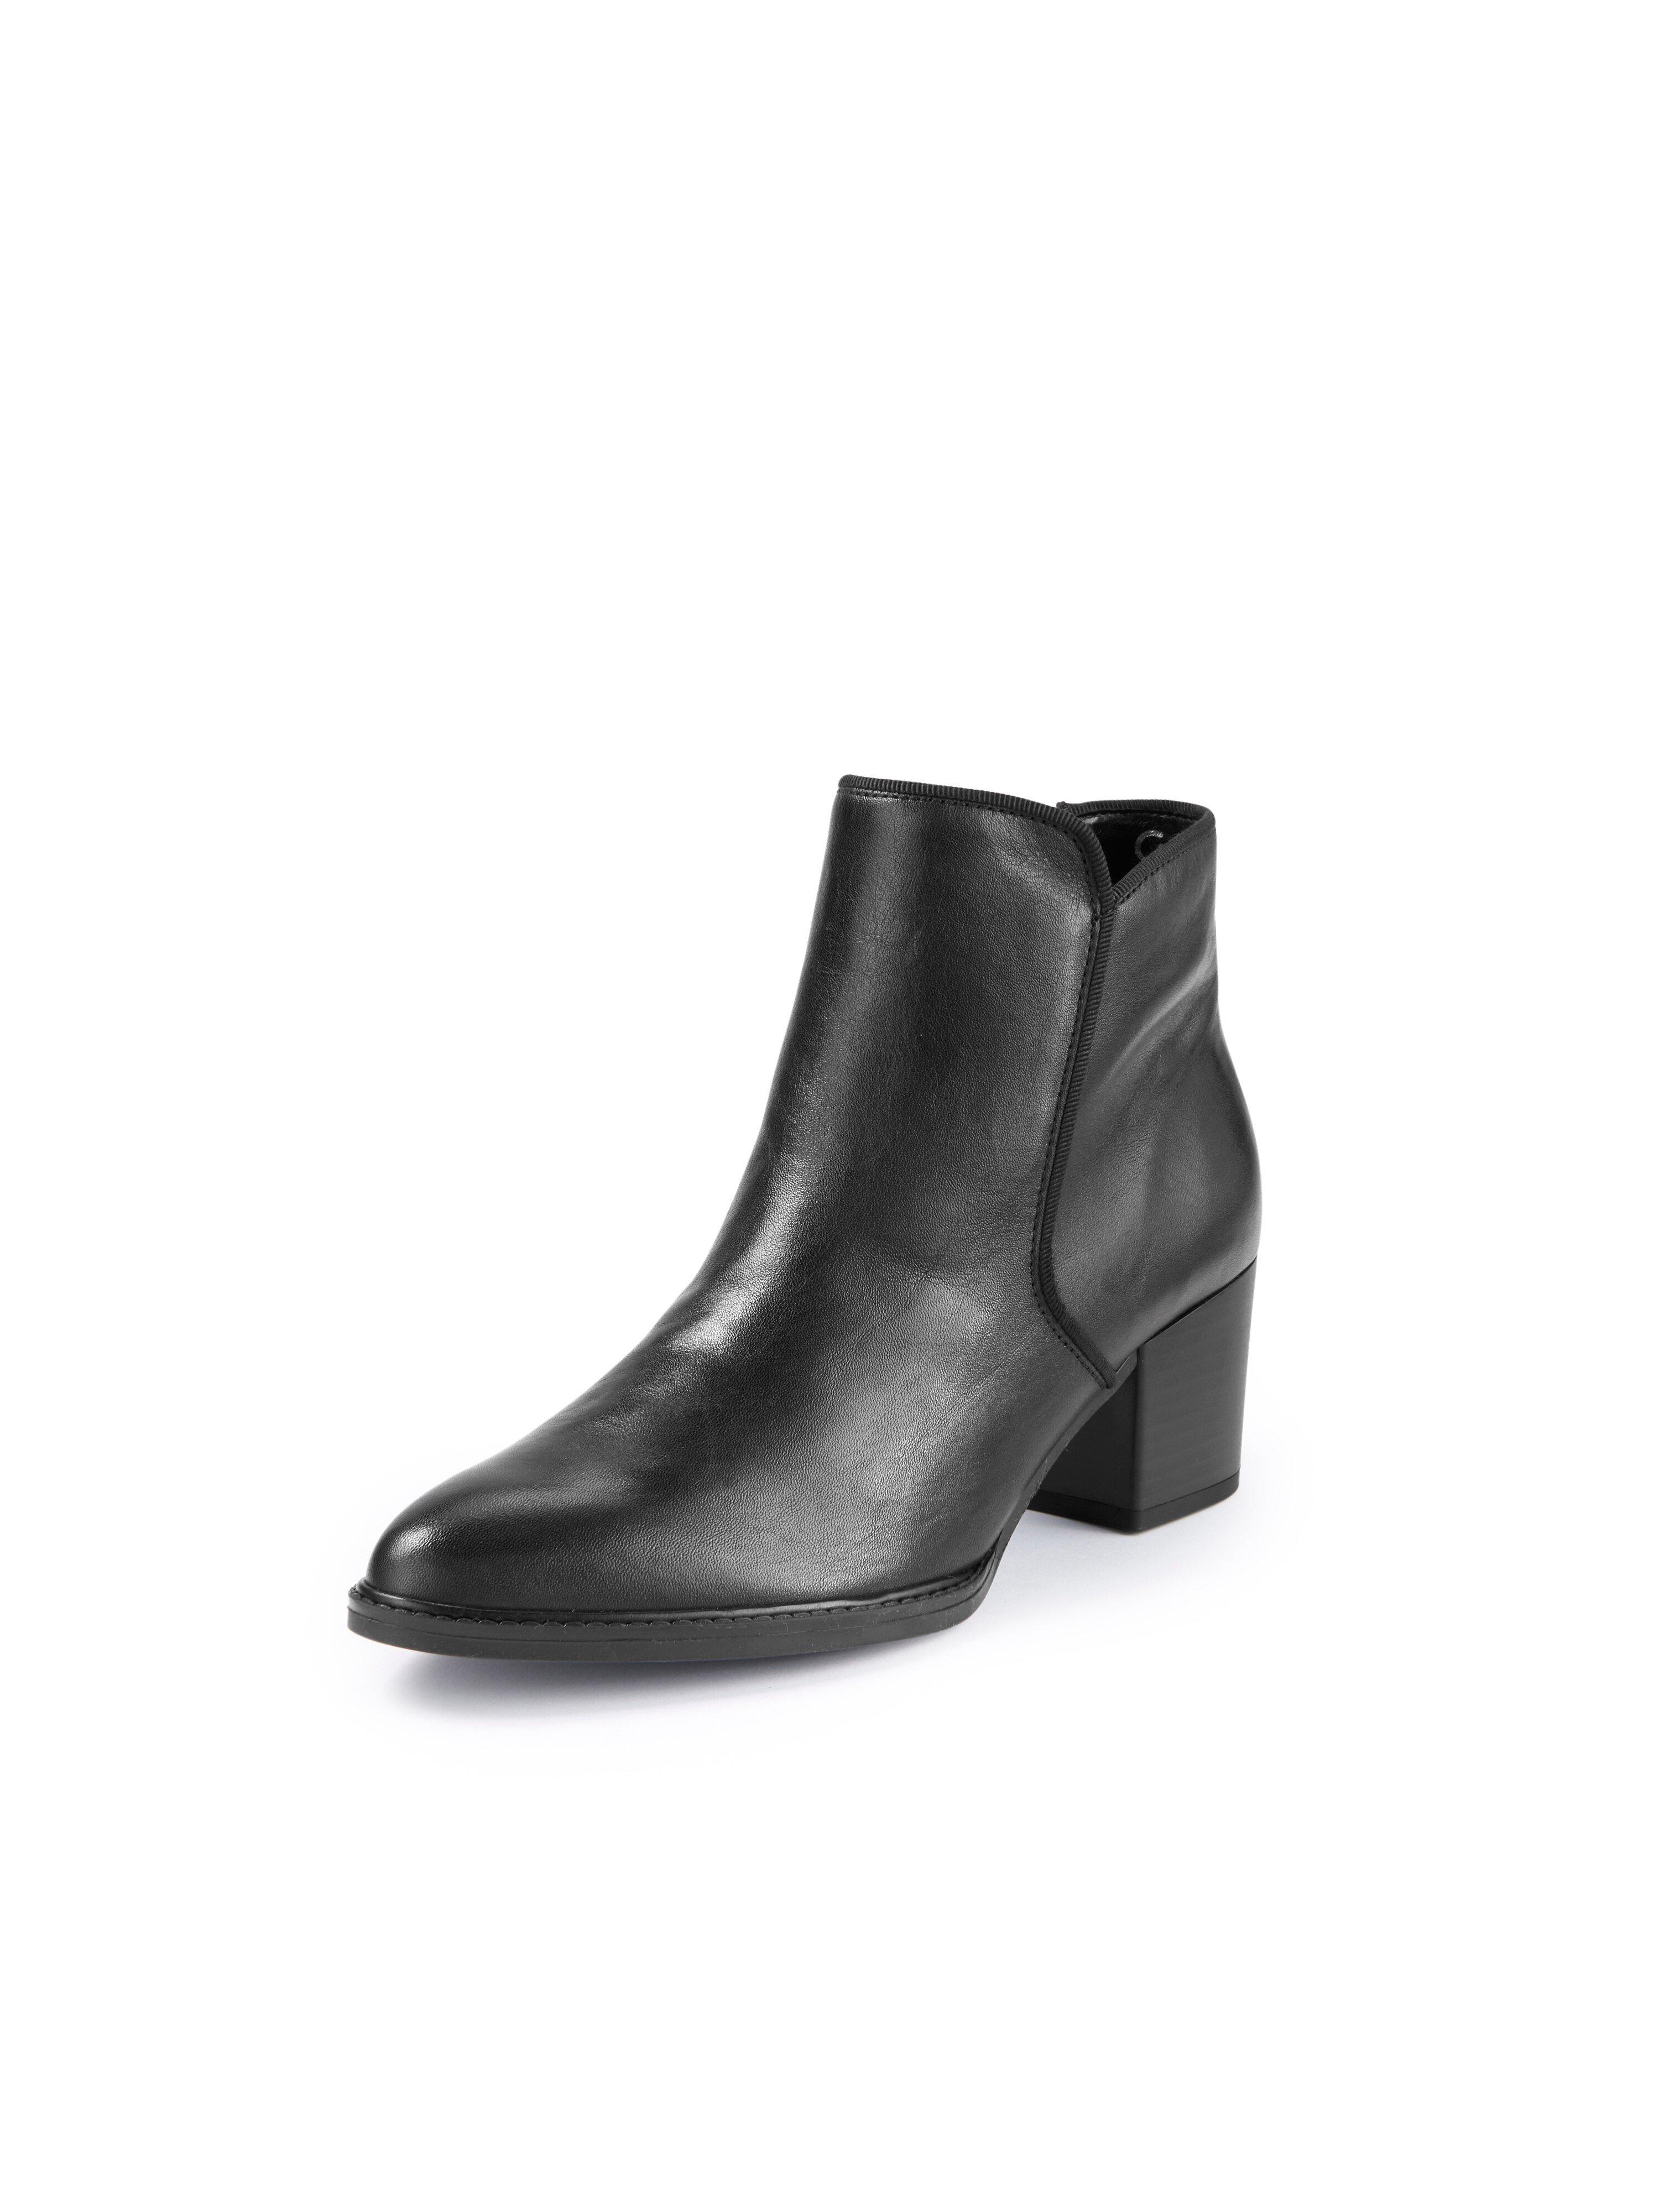 Gabor Comfort - Les boots